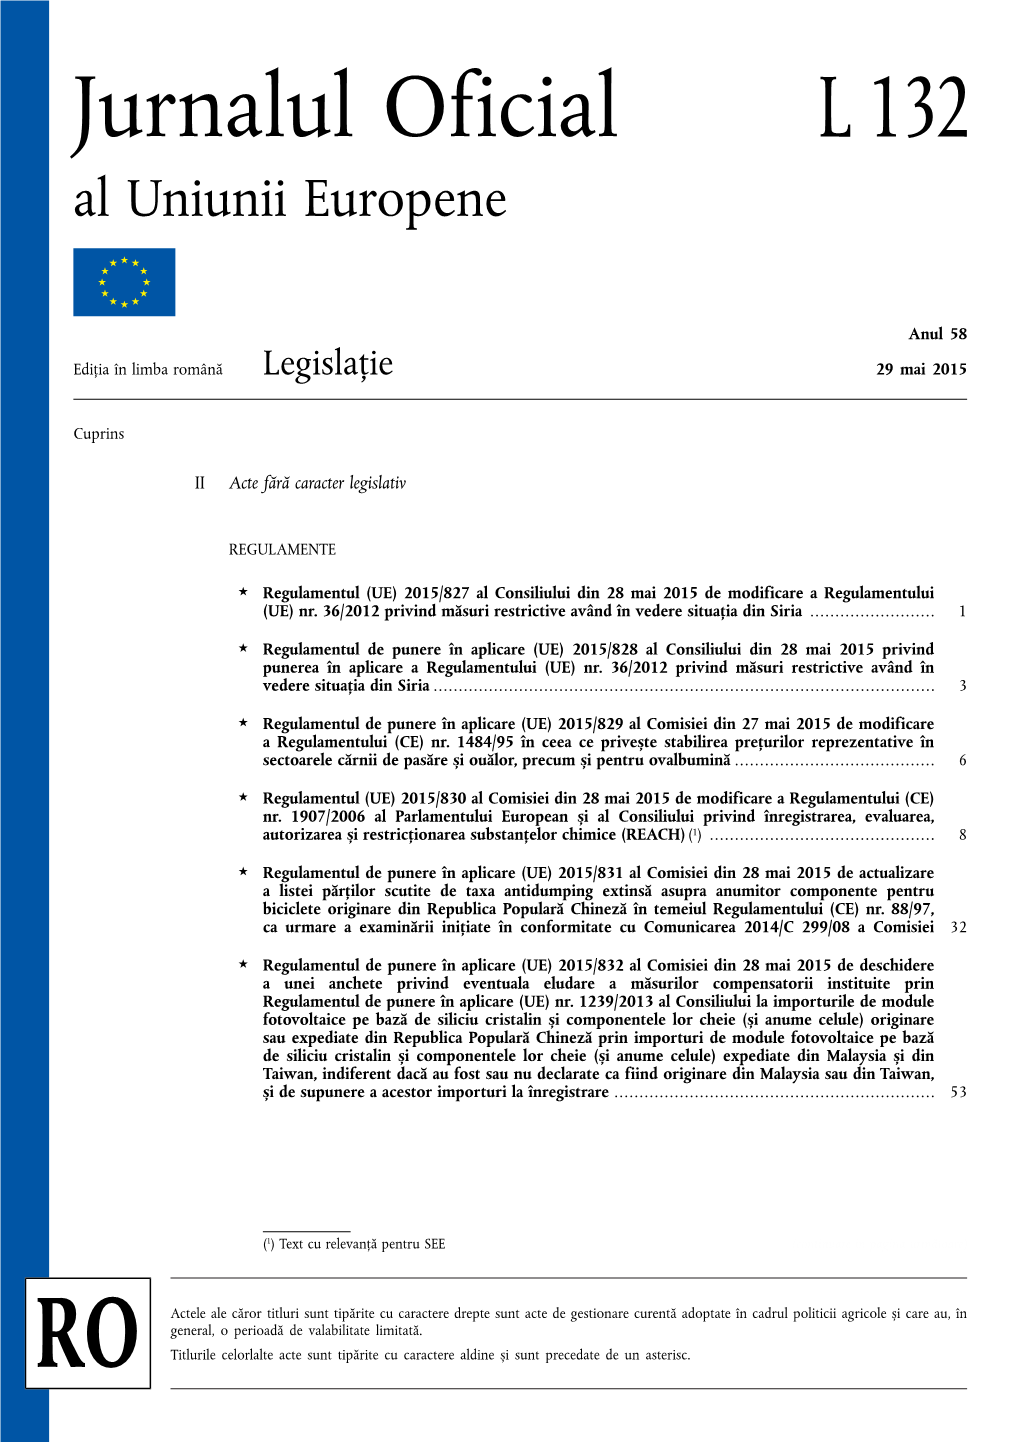 Regulamentul (UE) 2015/827 Al Consiliului Din 28 Mai 2015 De Modificare a Regulamentului (UE) Nr